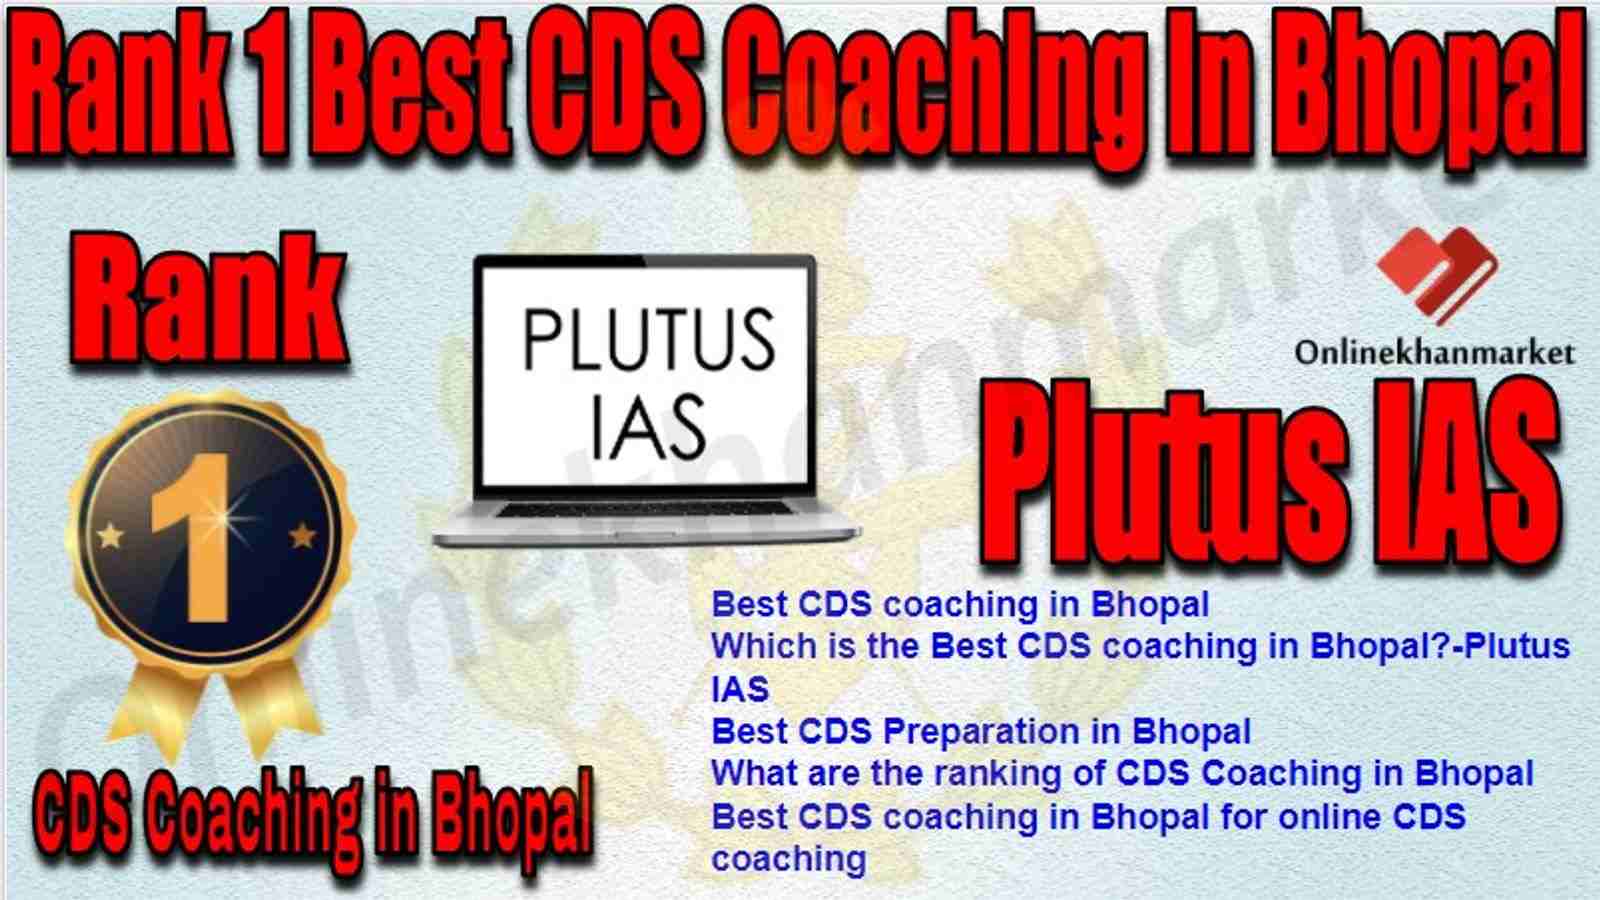 Rank 1 Best CDS Coaching in bhopal